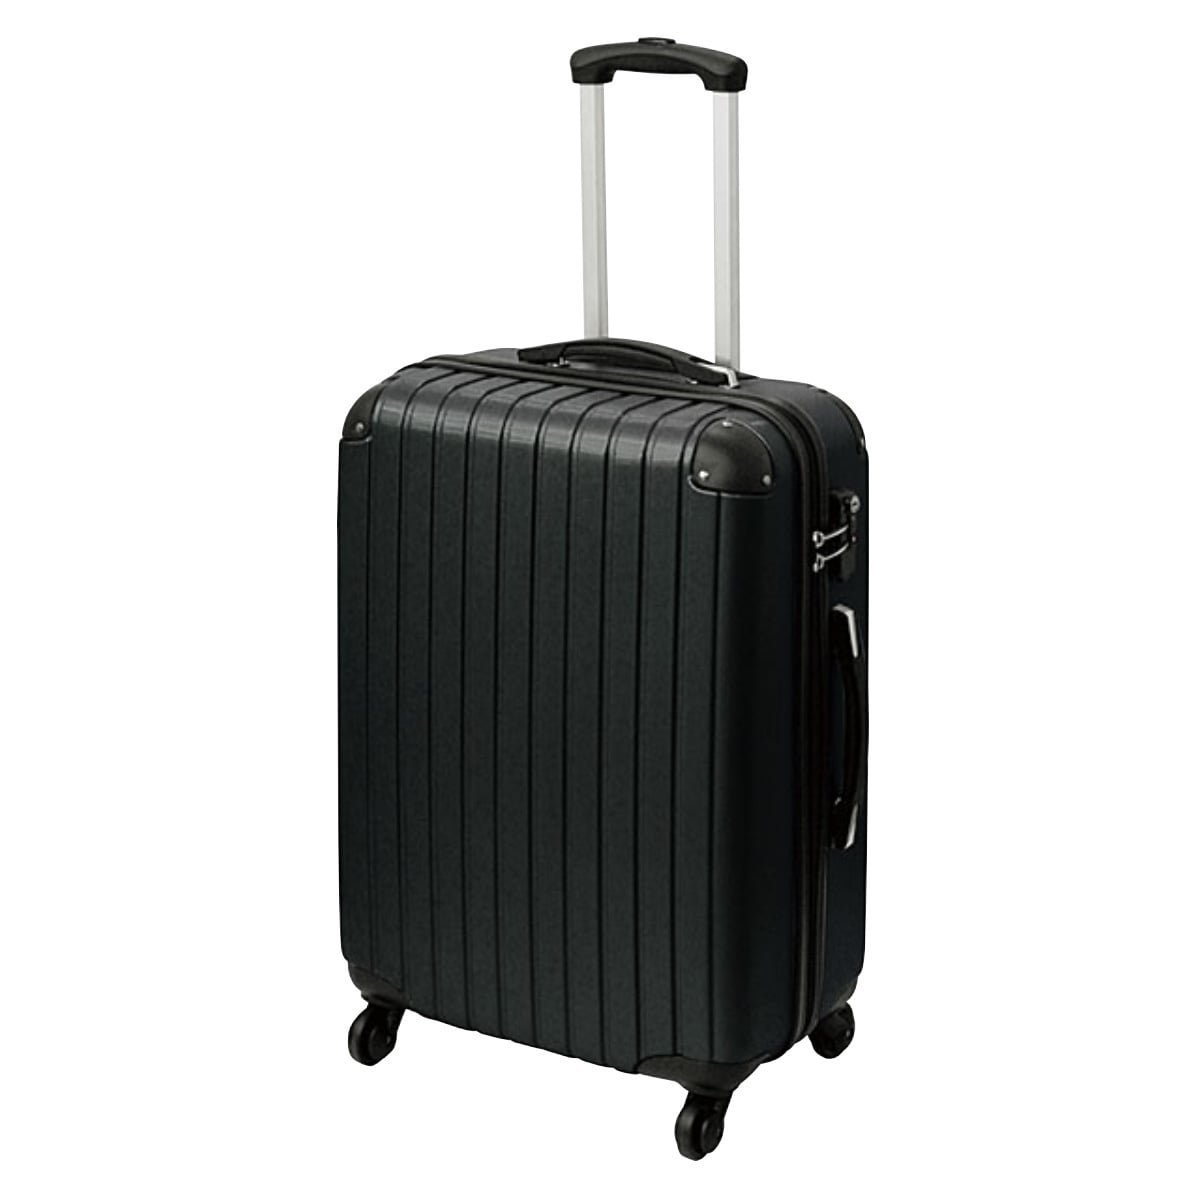 スーツケース Lサイズ キャリーケース TSAロック付 ブラック